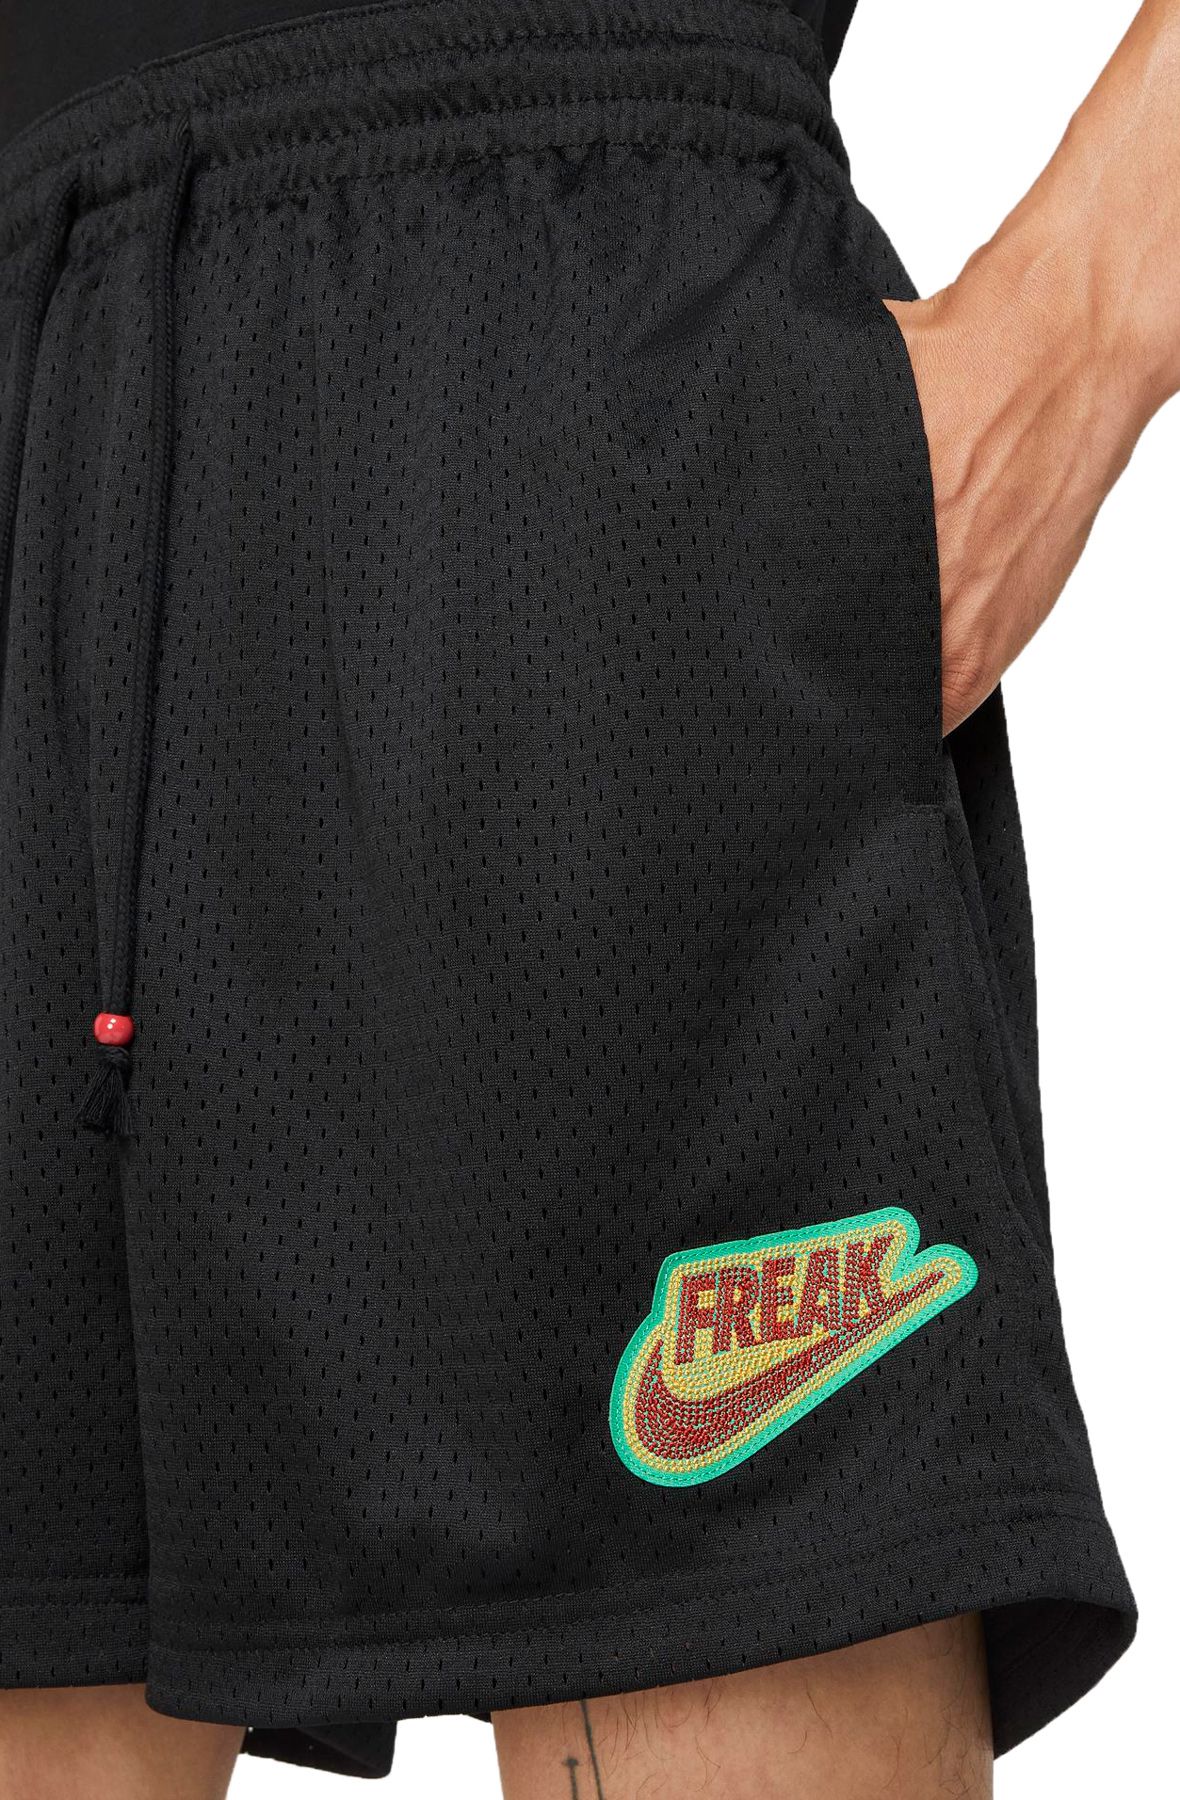 Nike Mens Giannis Freak Mesh Basketball Shorts (Black)